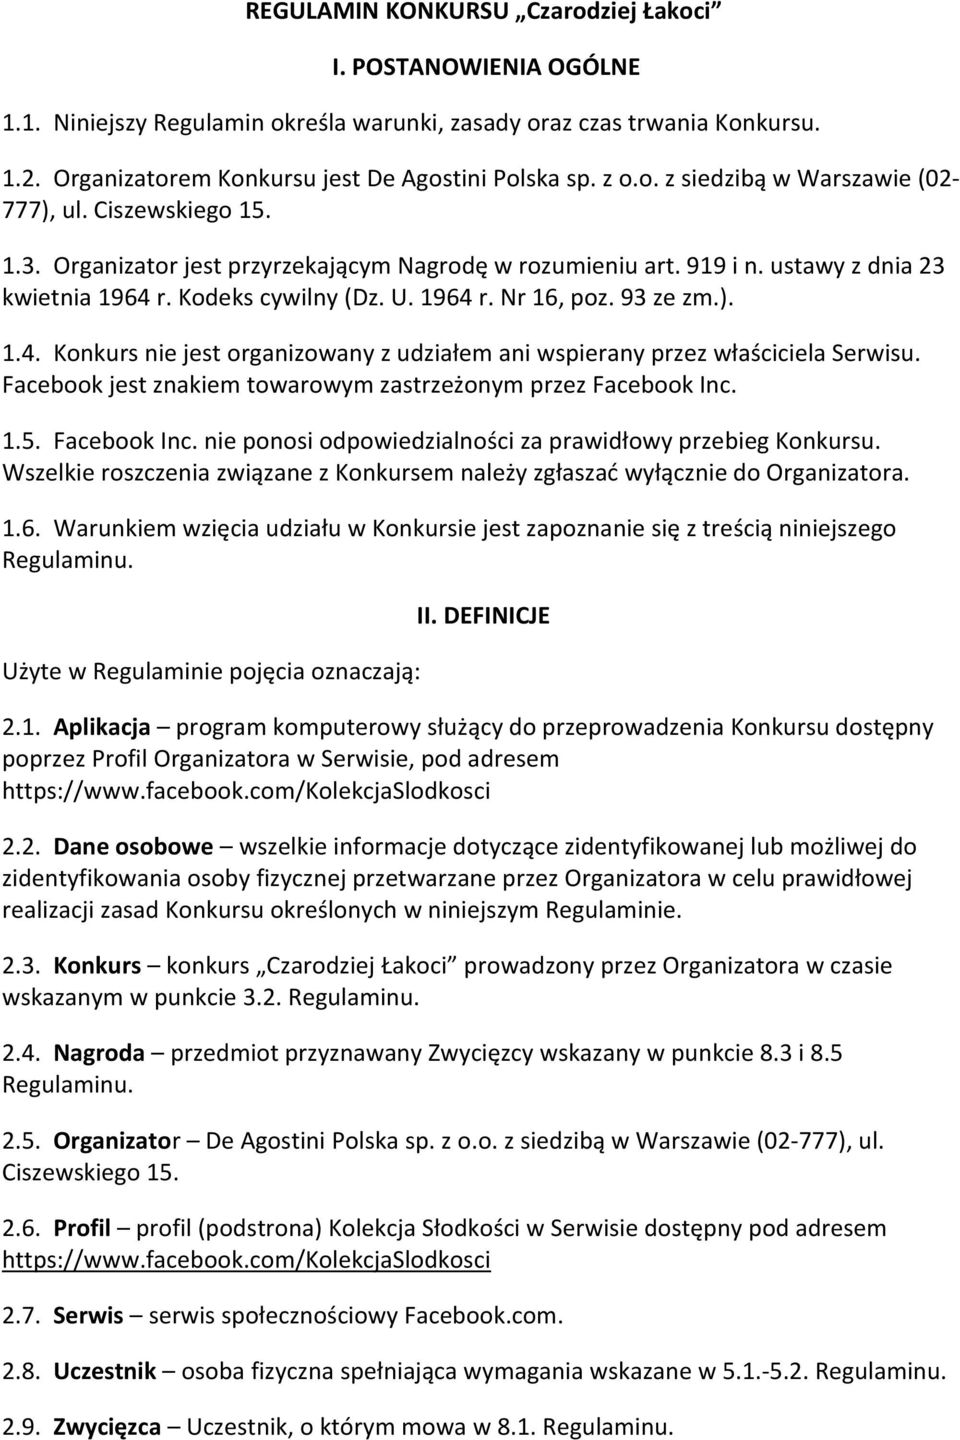 DEFINICJE 2.1. Aplikacja program komputerowy poprzez Profil Organizatora w Serwisie, pod adresem https://www.facebook.com/kolekcjaslodkosci 2.2. Dane osobowe do zidentyfikowania osoby fizyczn w niniejszym Regulaminie.